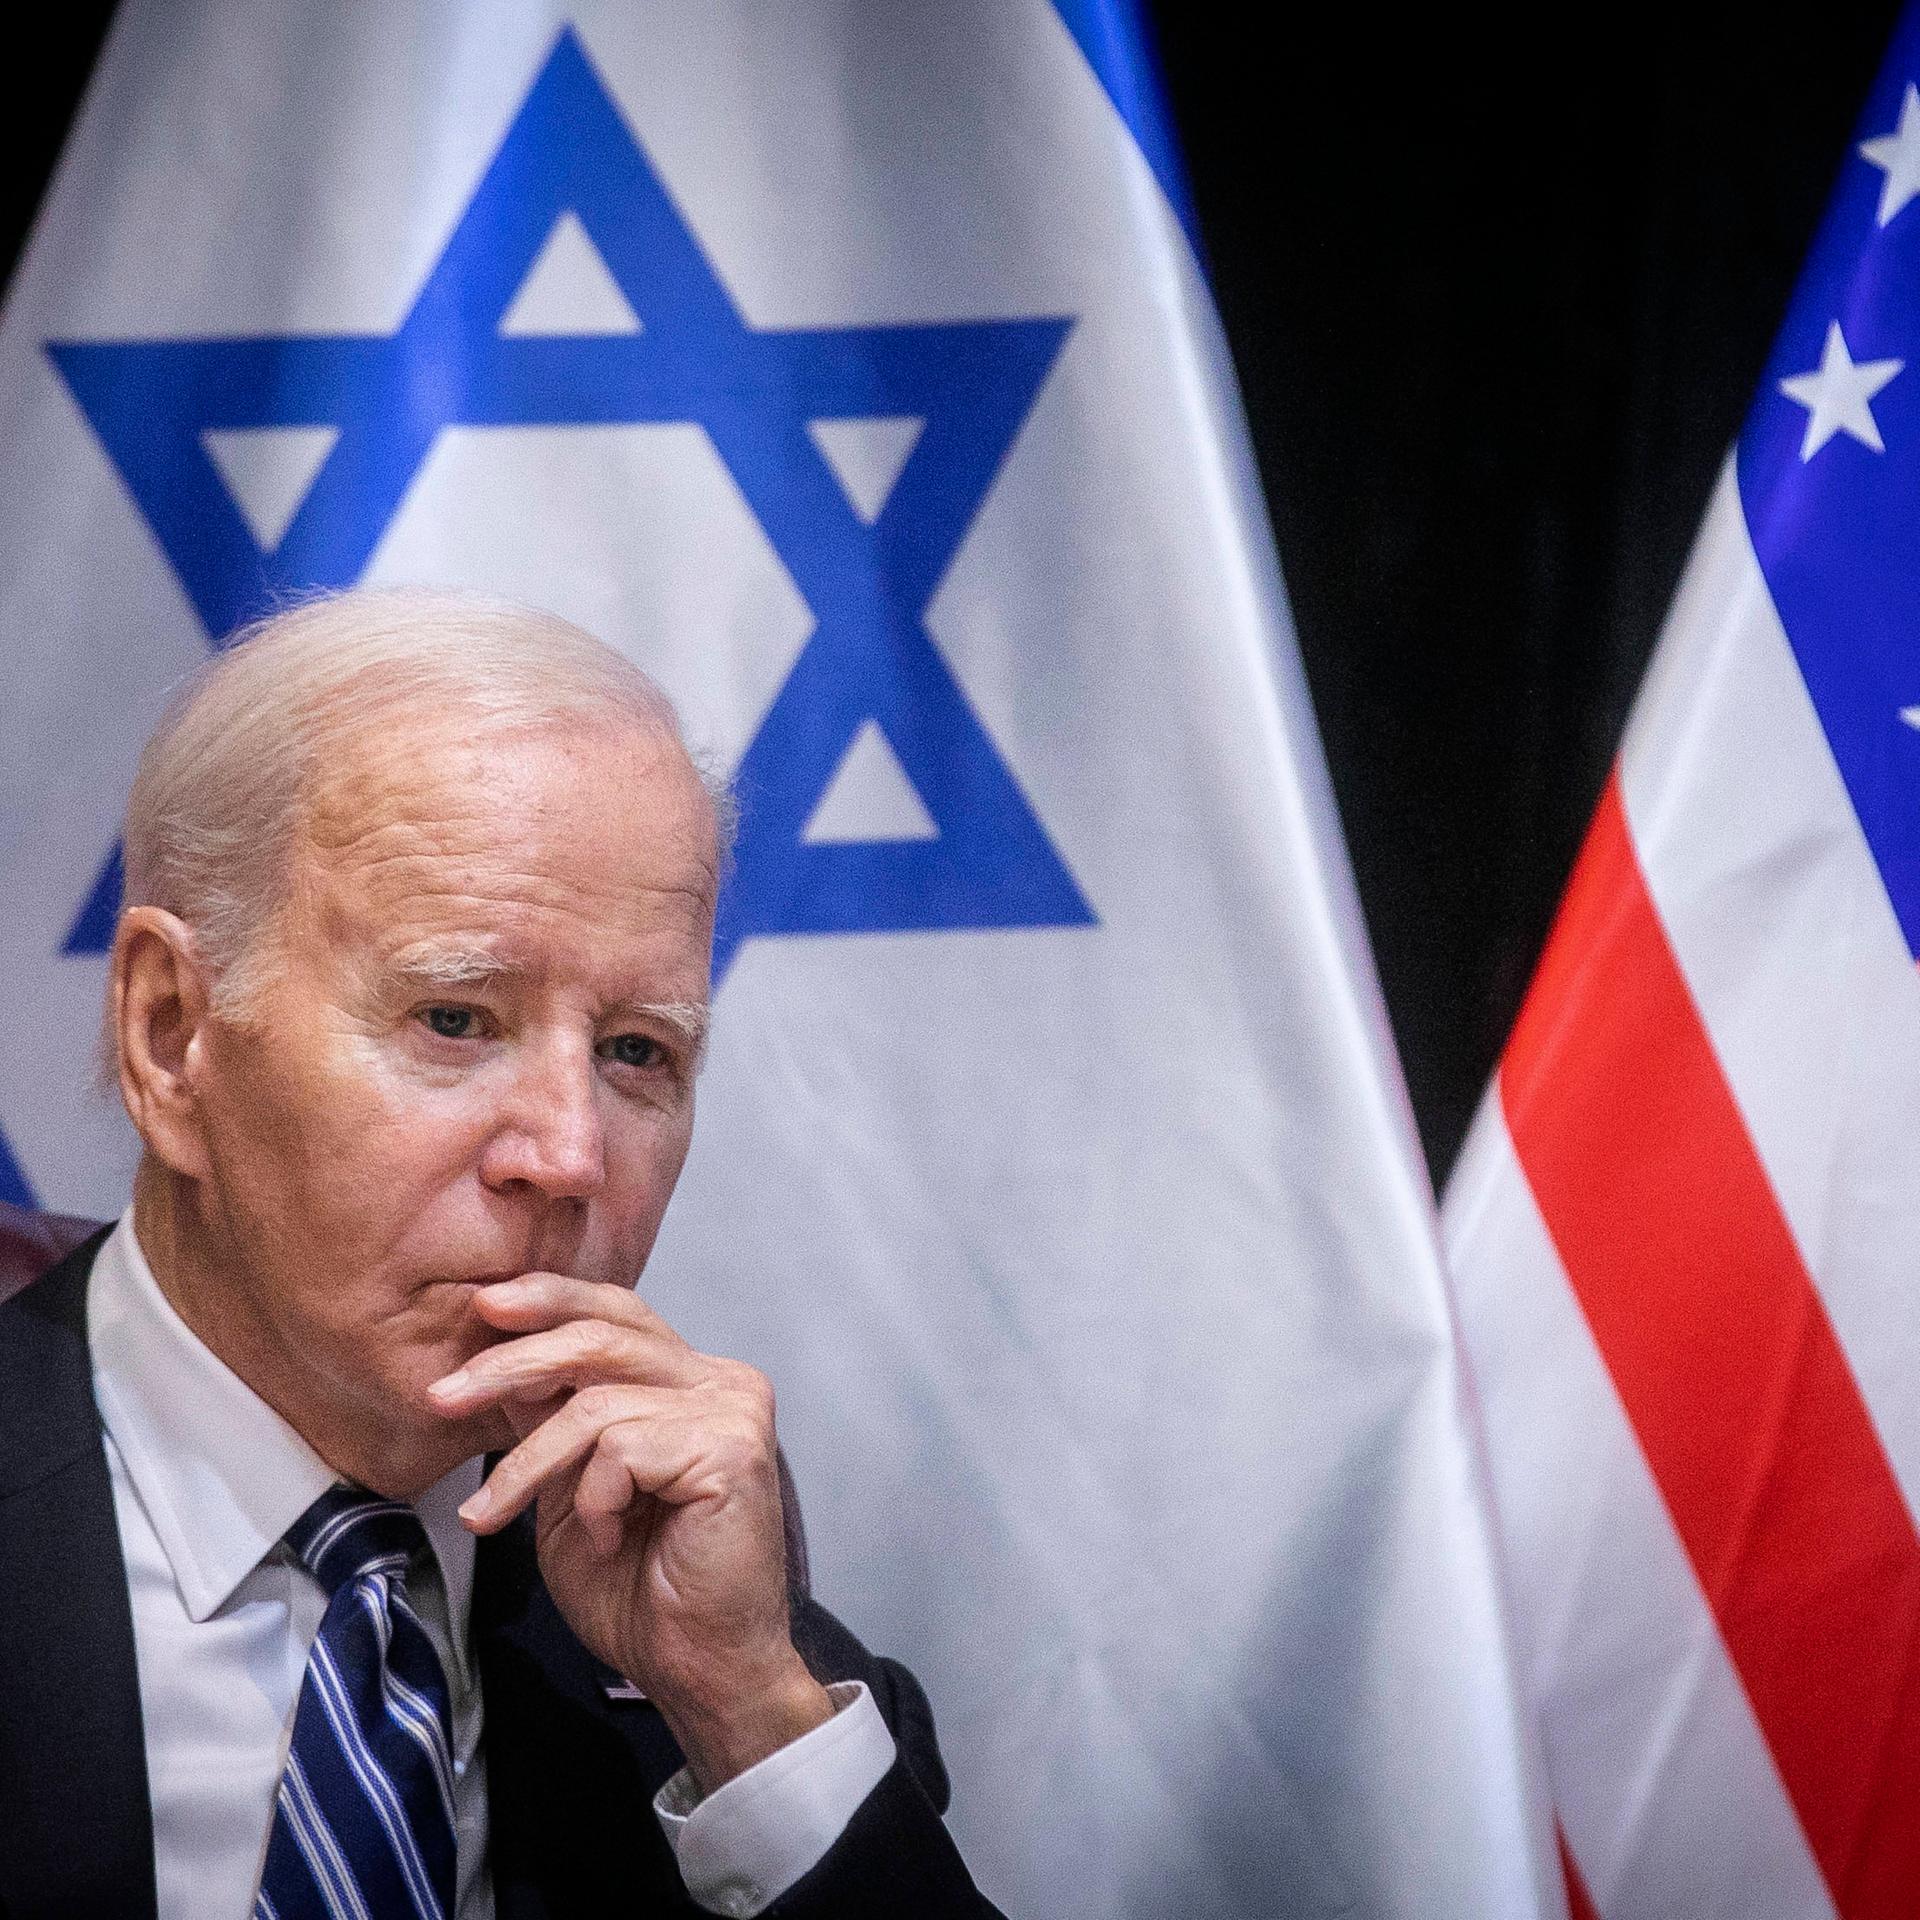 US-Präsident Joe Biden sitzt vor einer israelischen und einer US-amerikanischen Flagge.